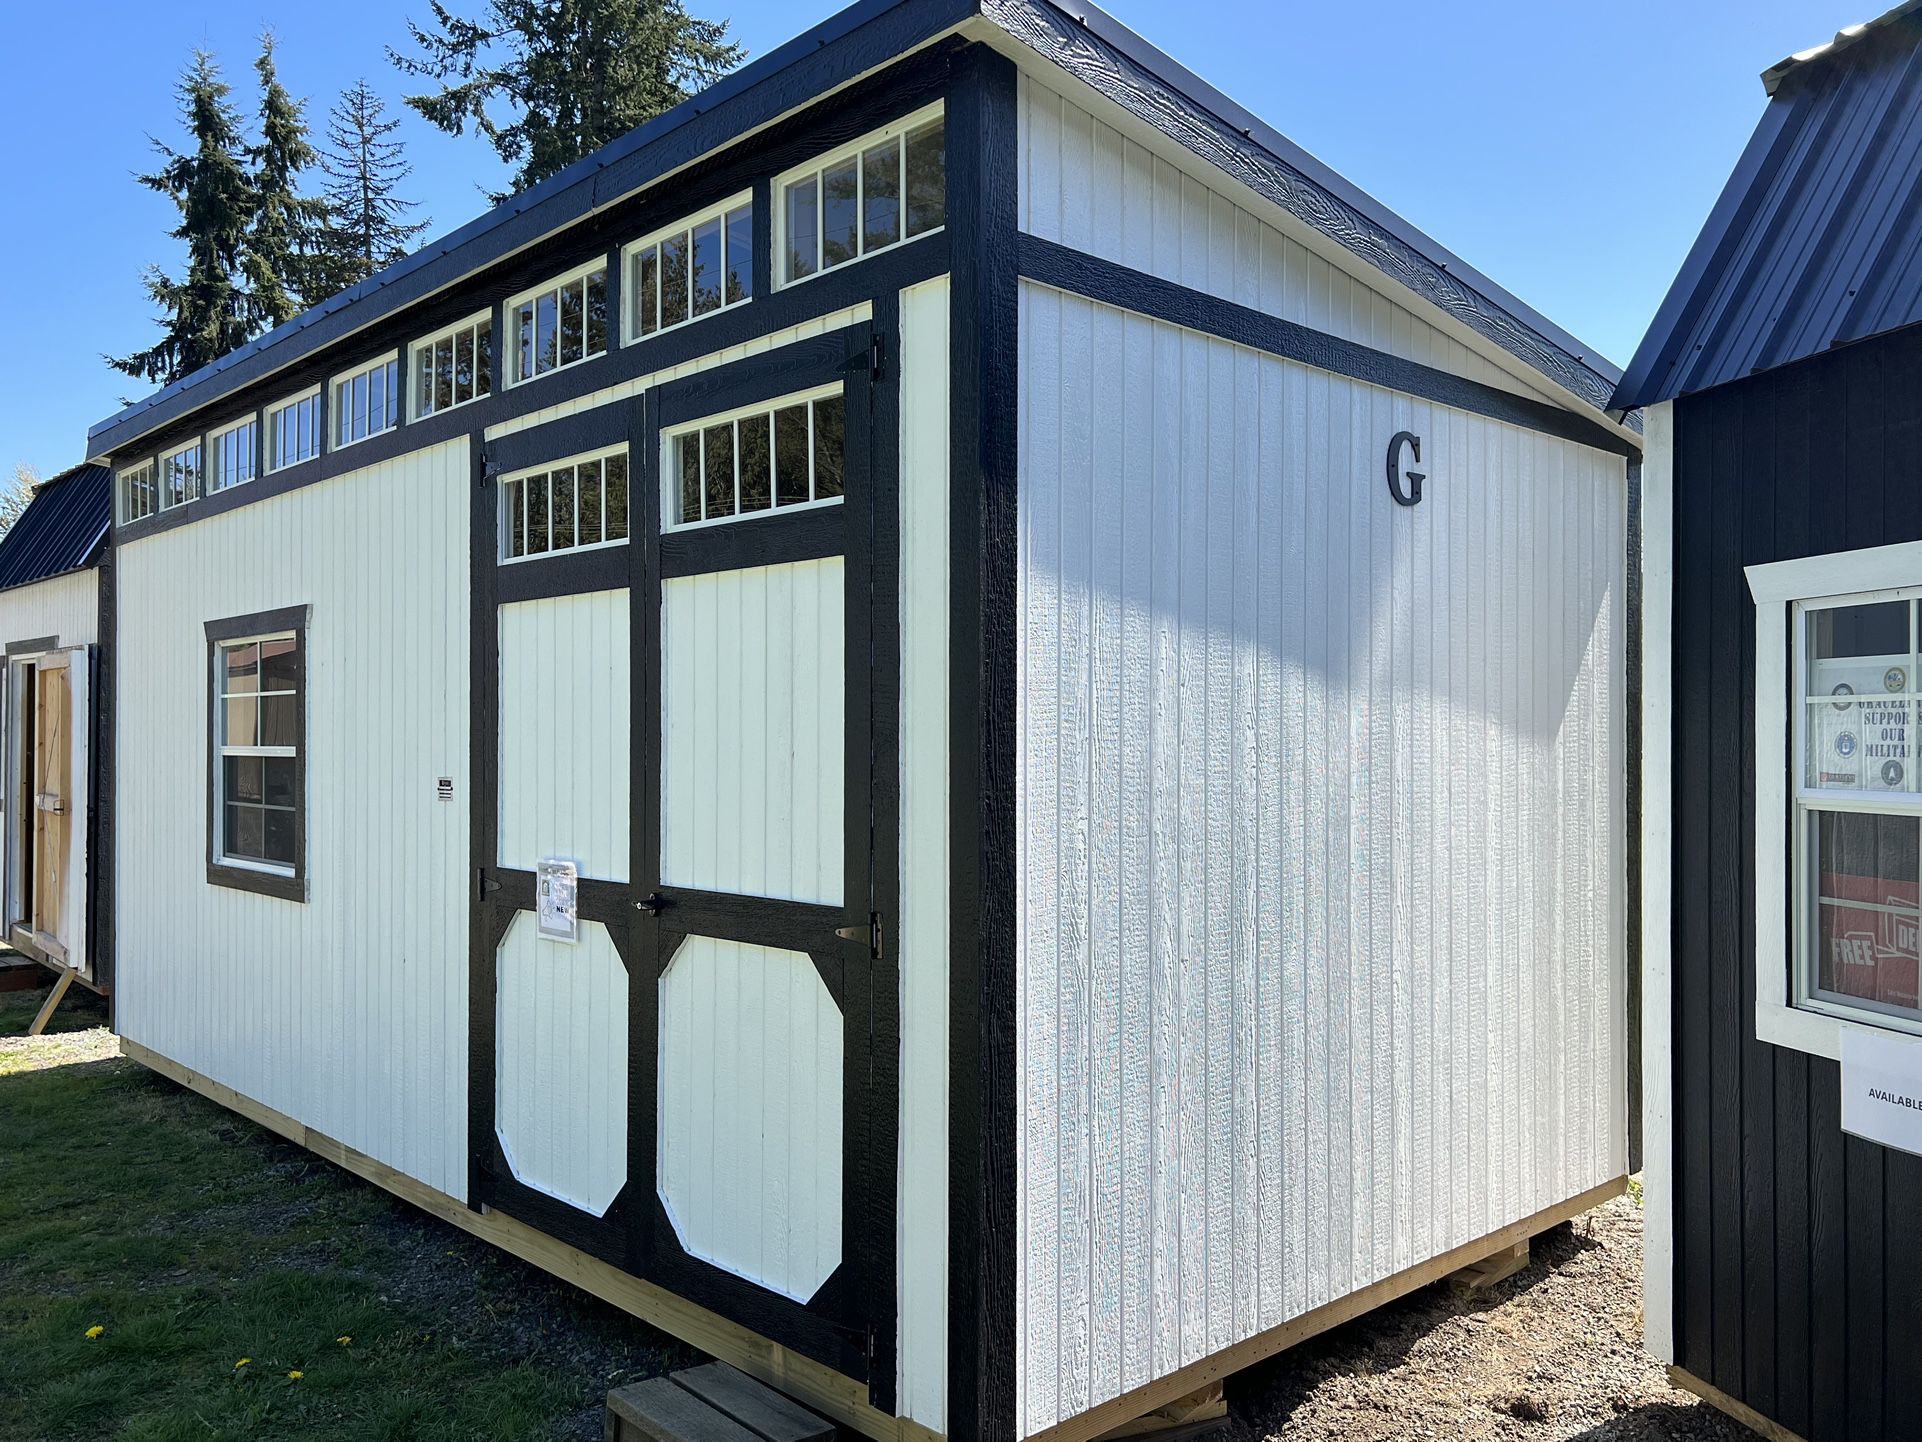 Graceland Portable Buildings Urban Storage Workshop Yard Shed